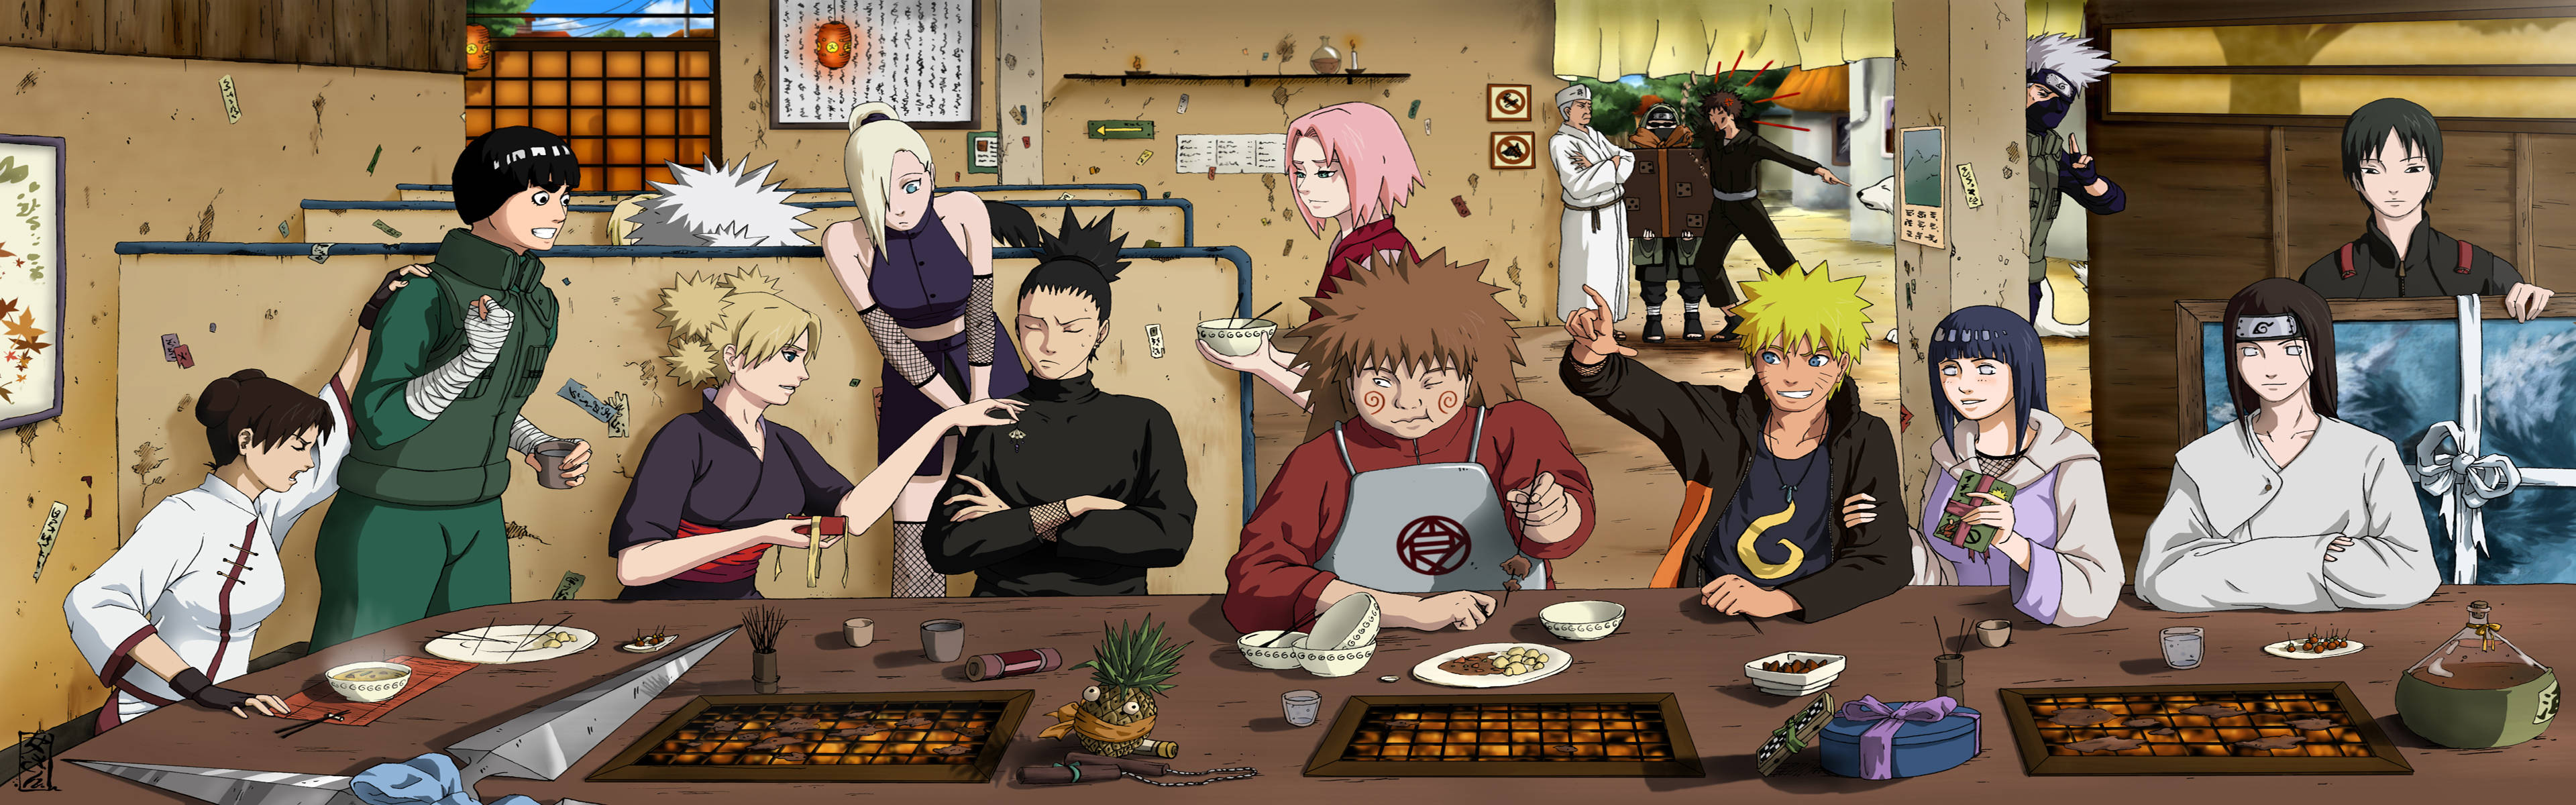 Shikamaru And Friends Eating